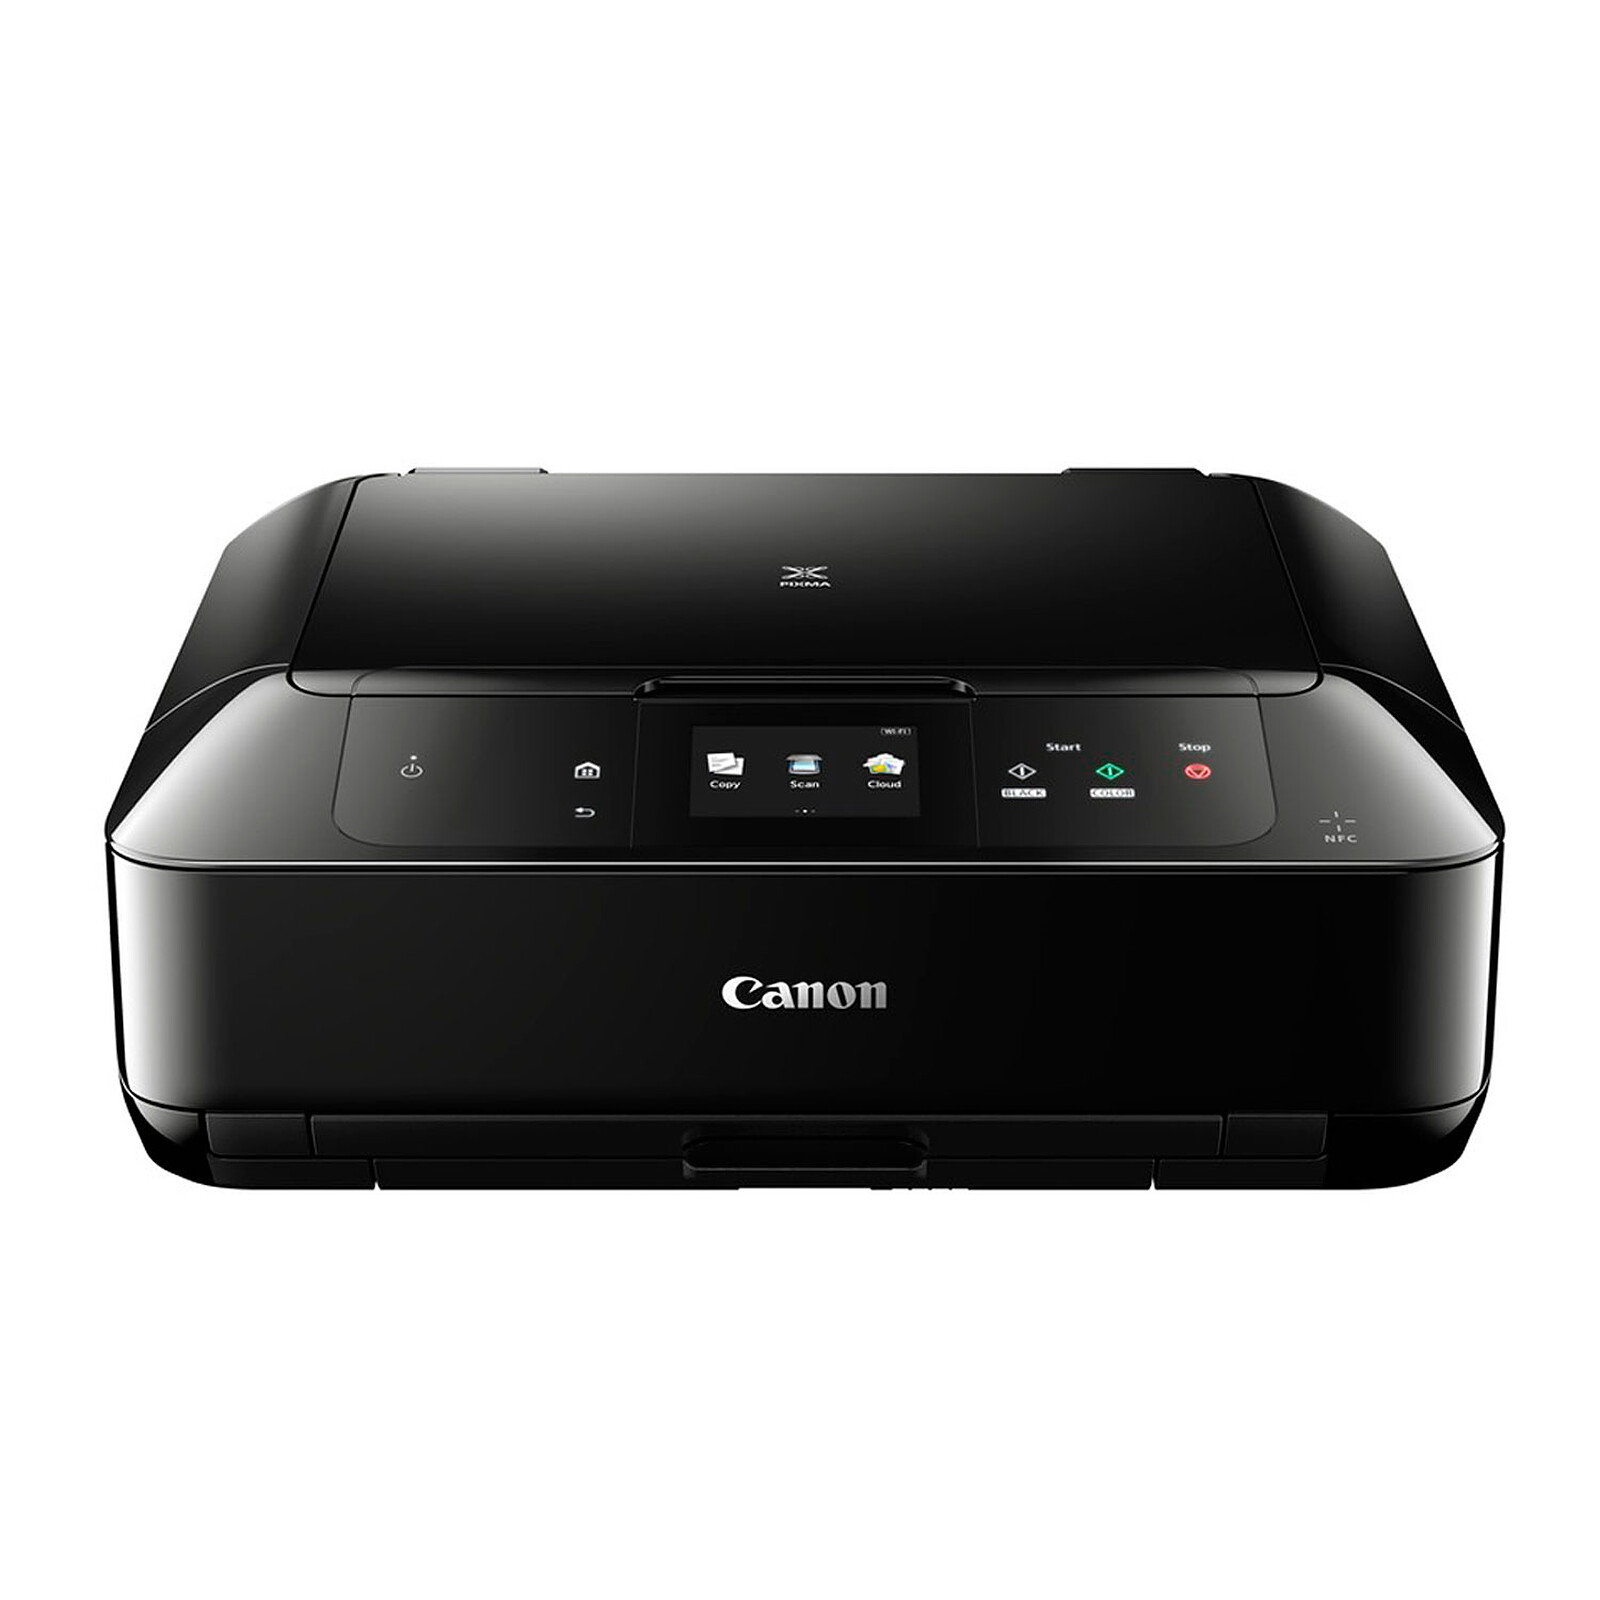 Canon Simple fonction - Wifi et Ethernet - 5 cartouches séparées